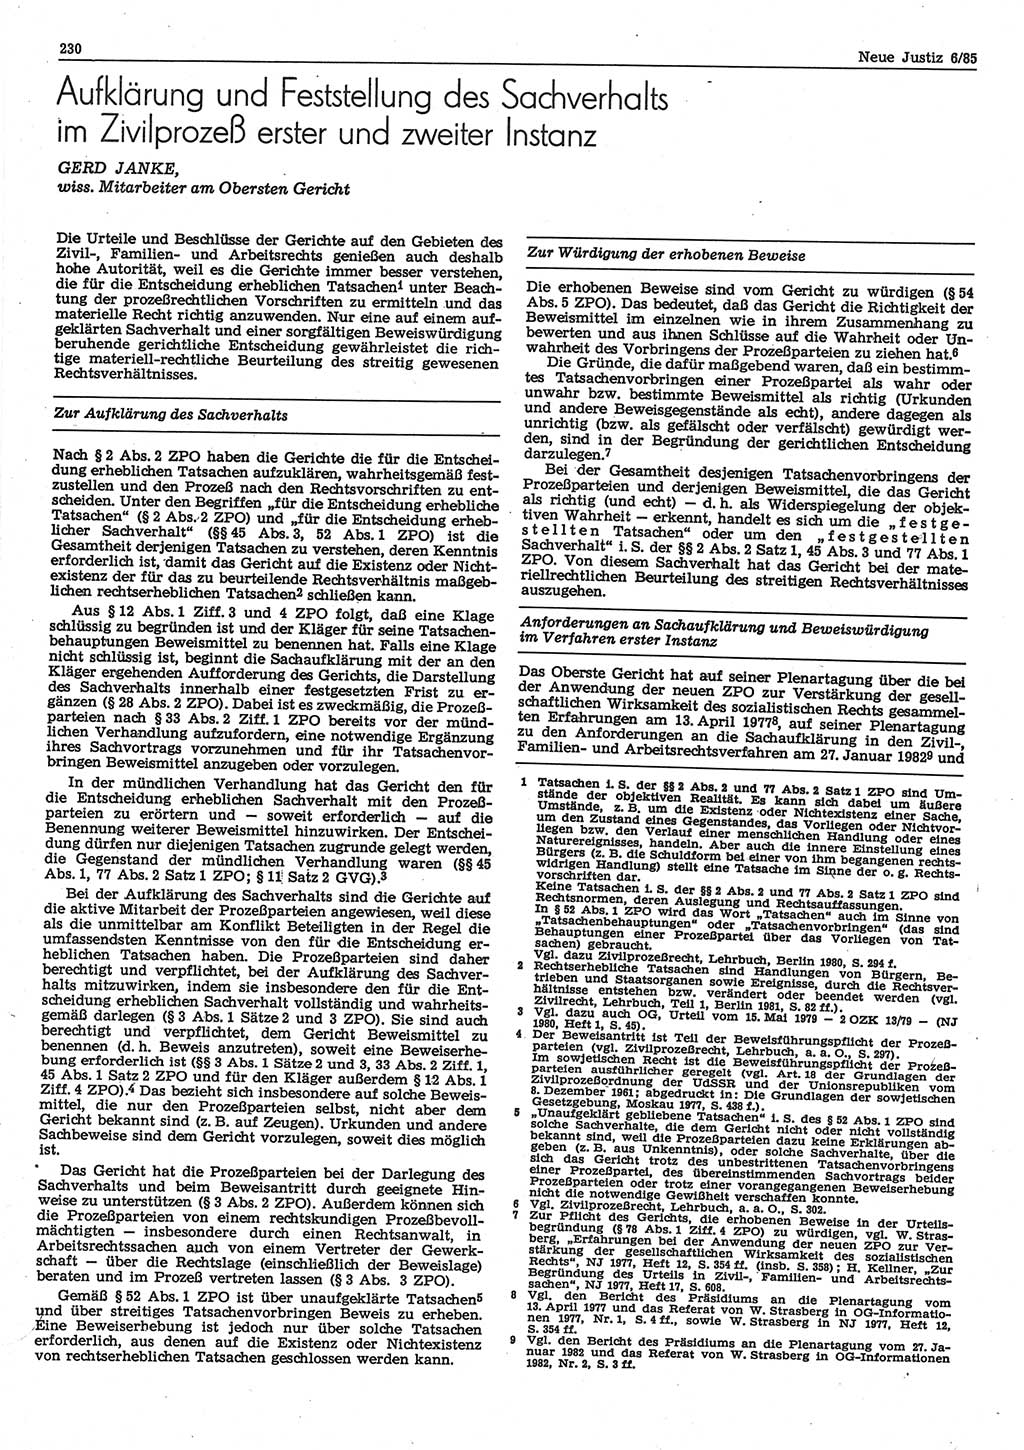 Neue Justiz (NJ), Zeitschrift für sozialistisches Recht und Gesetzlichkeit [Deutsche Demokratische Republik (DDR)], 39. Jahrgang 1985, Seite 230 (NJ DDR 1985, S. 230)